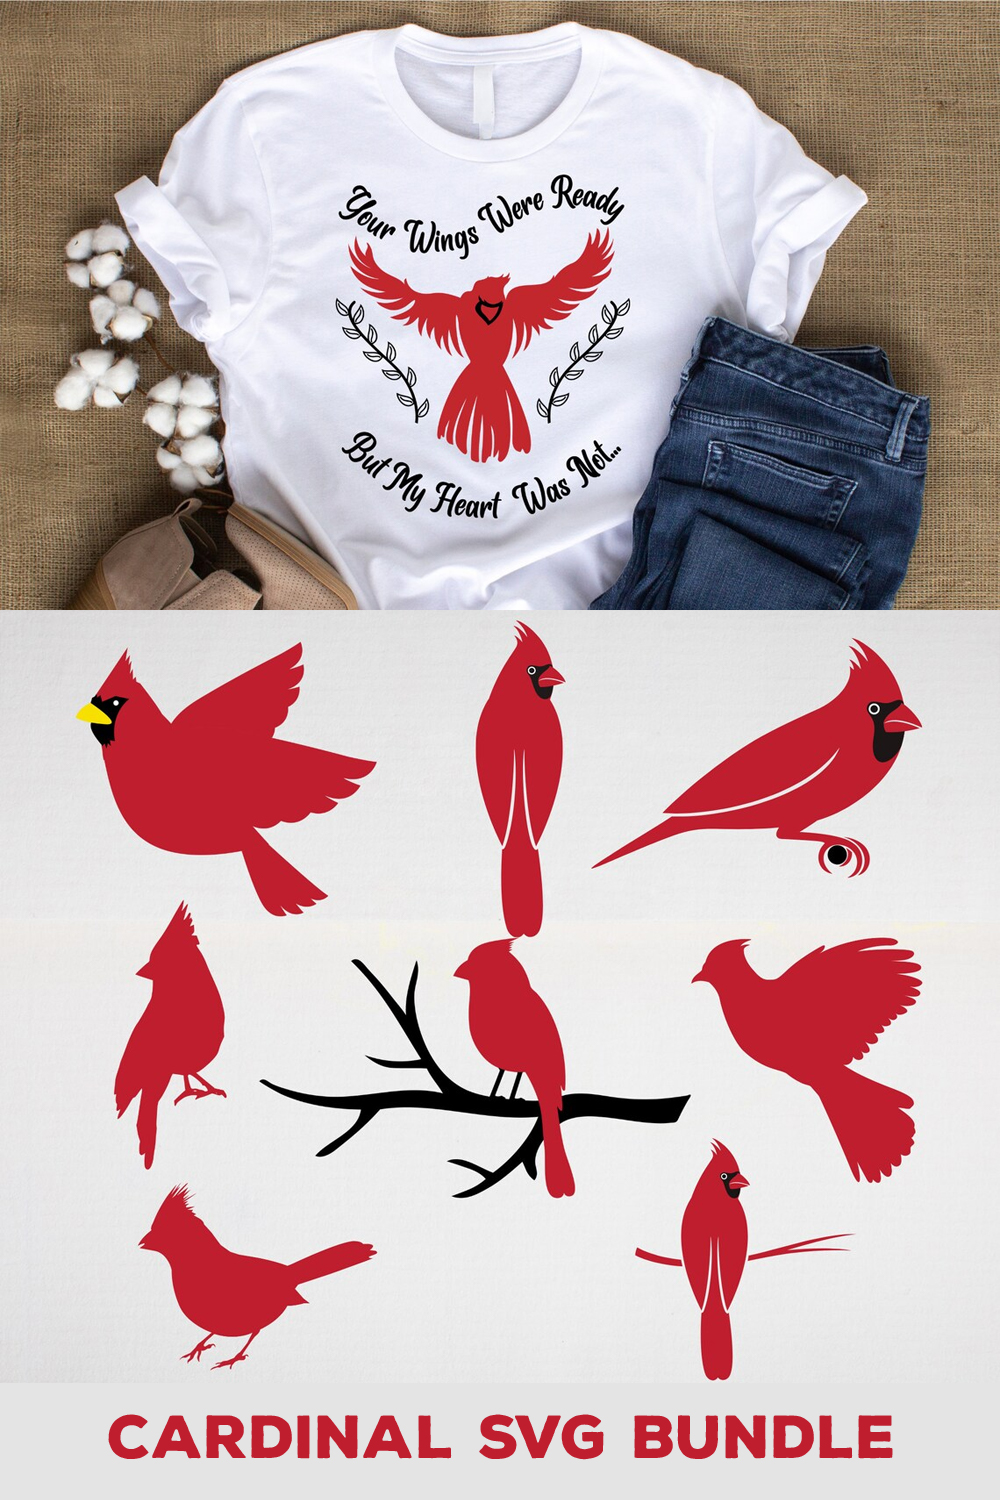 The cardinal svg bundle includes a t - shirt.